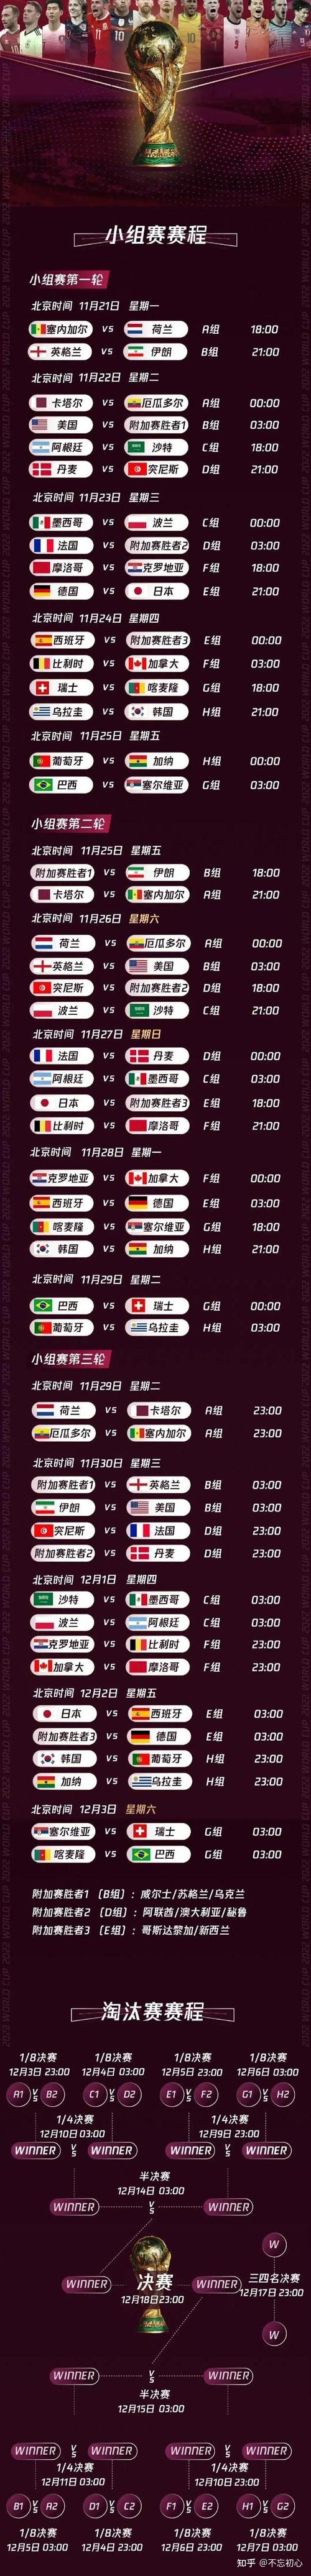 世界杯小组赛程时间表